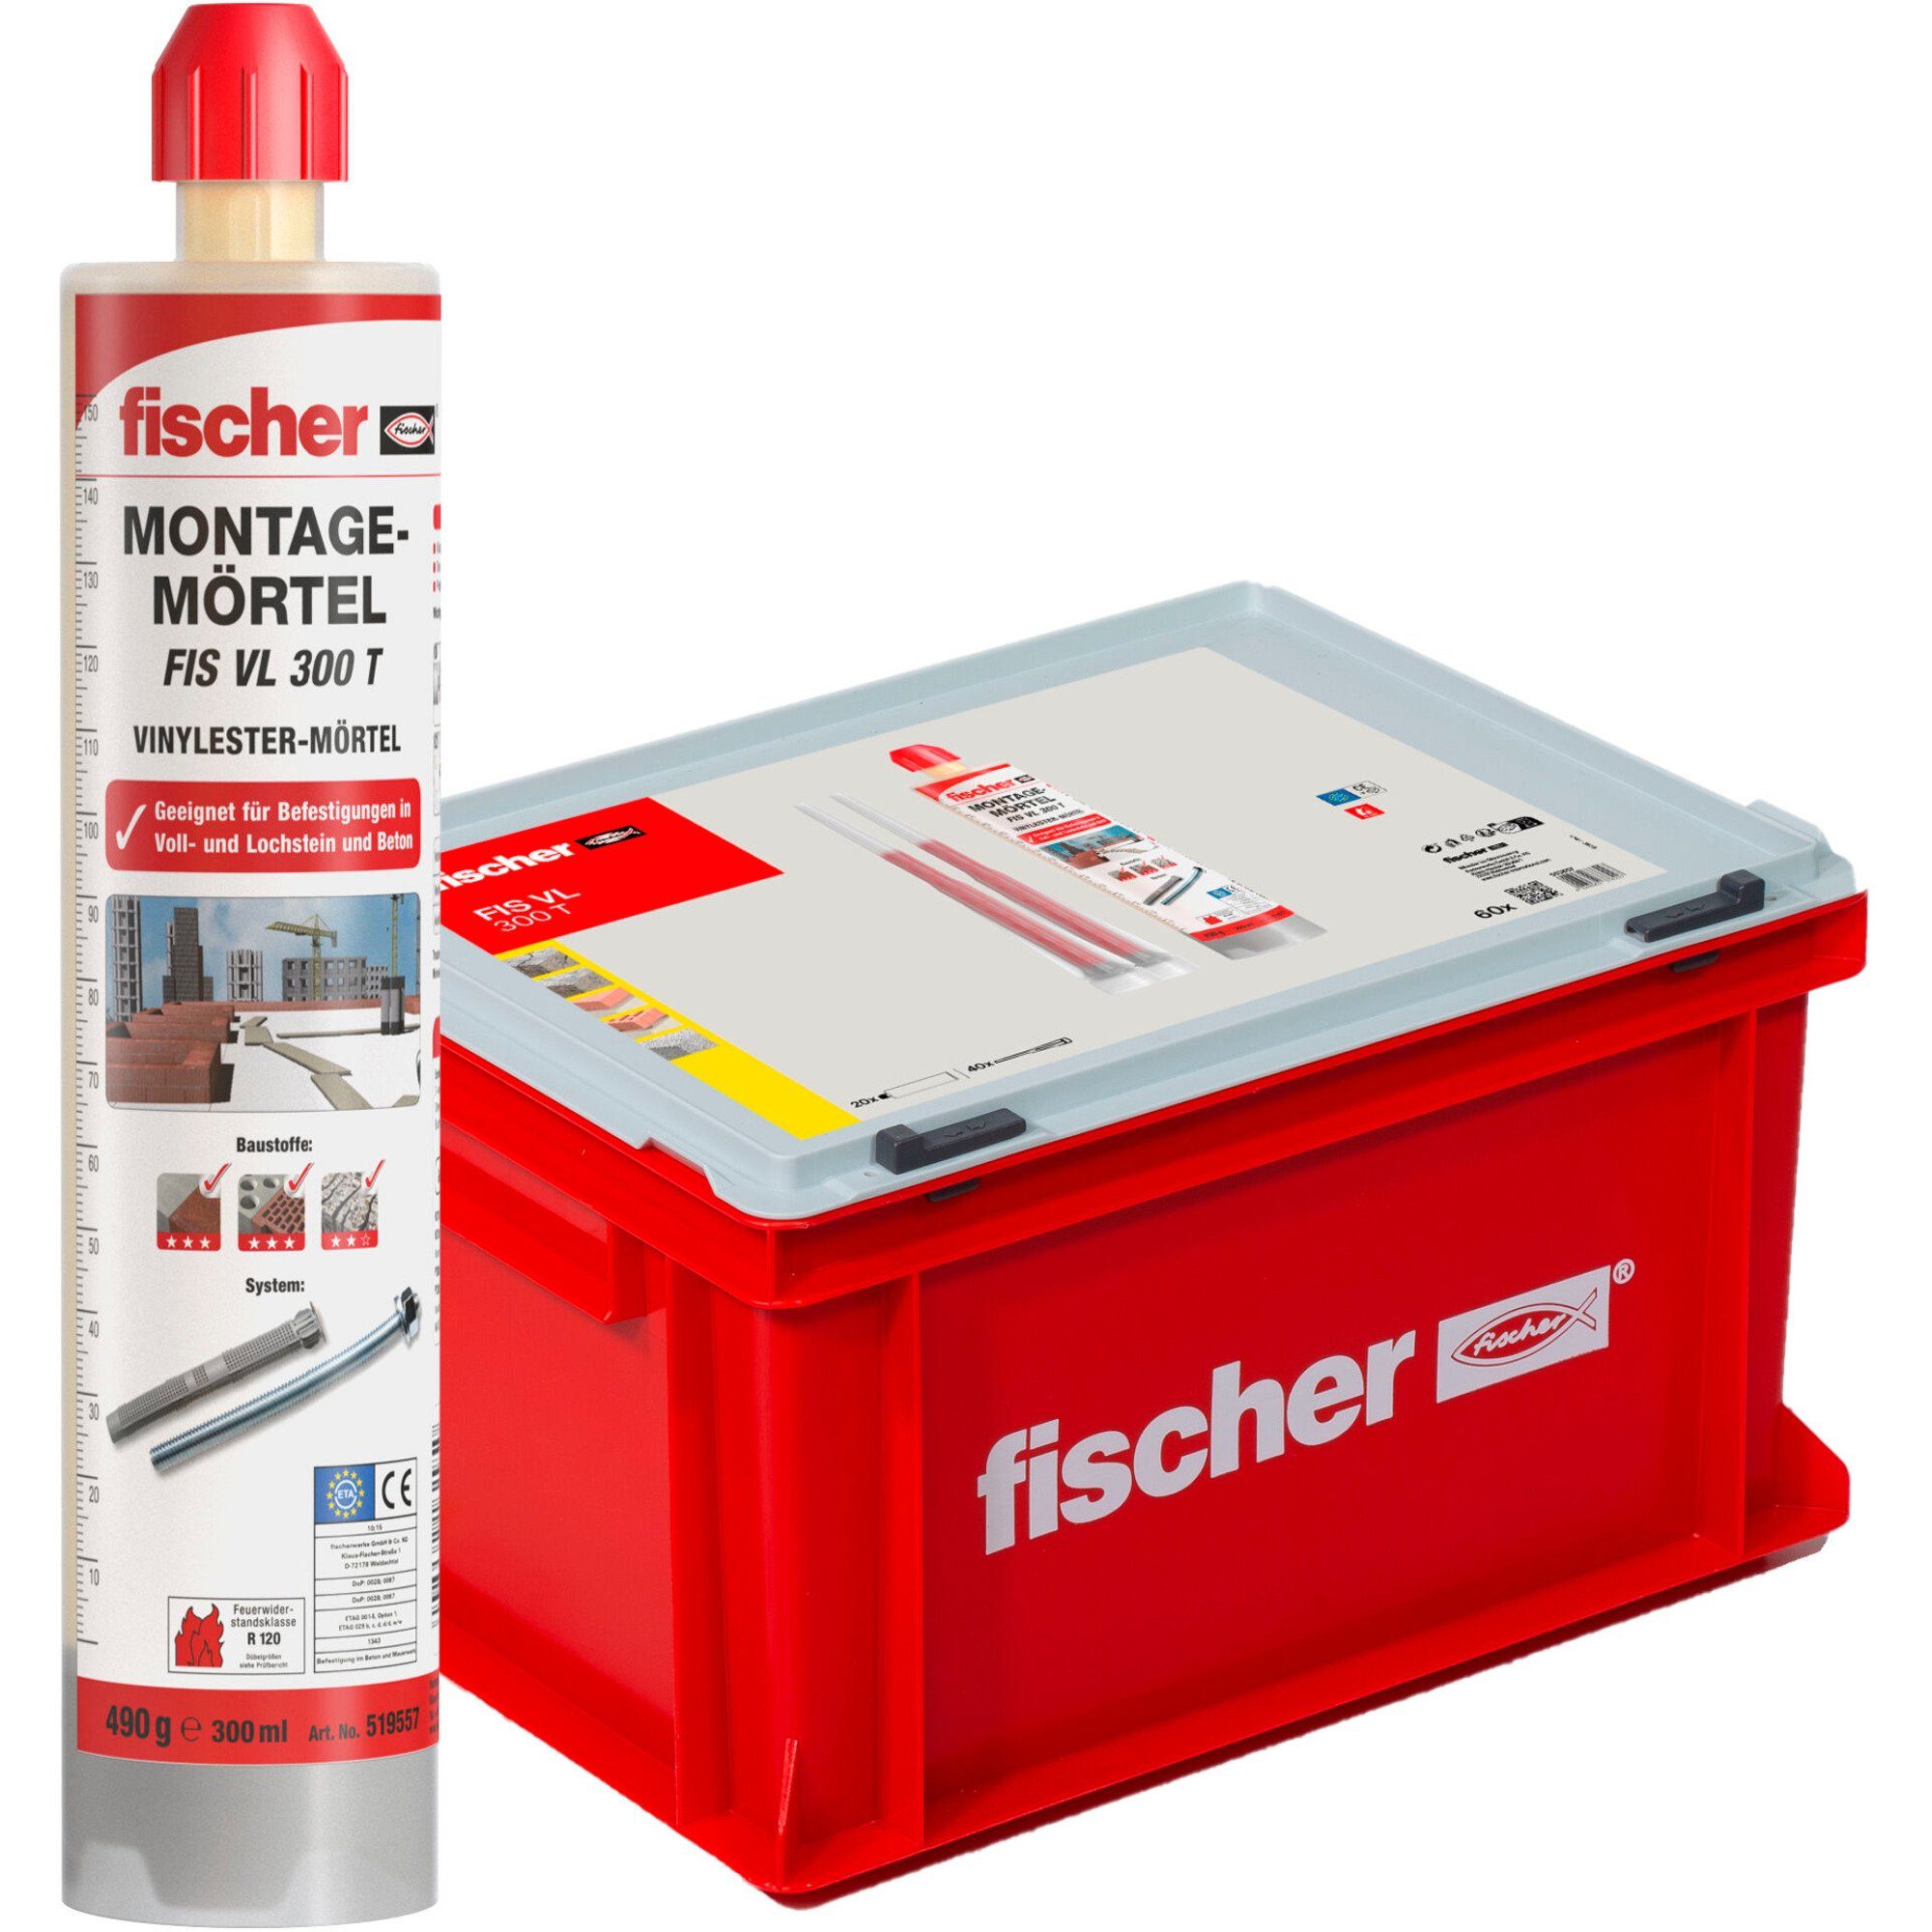 Fischer Befestigungstechnik Fischer Universaldübel fischer Vorteils-Box Montagemörtel FIS VL 300 T